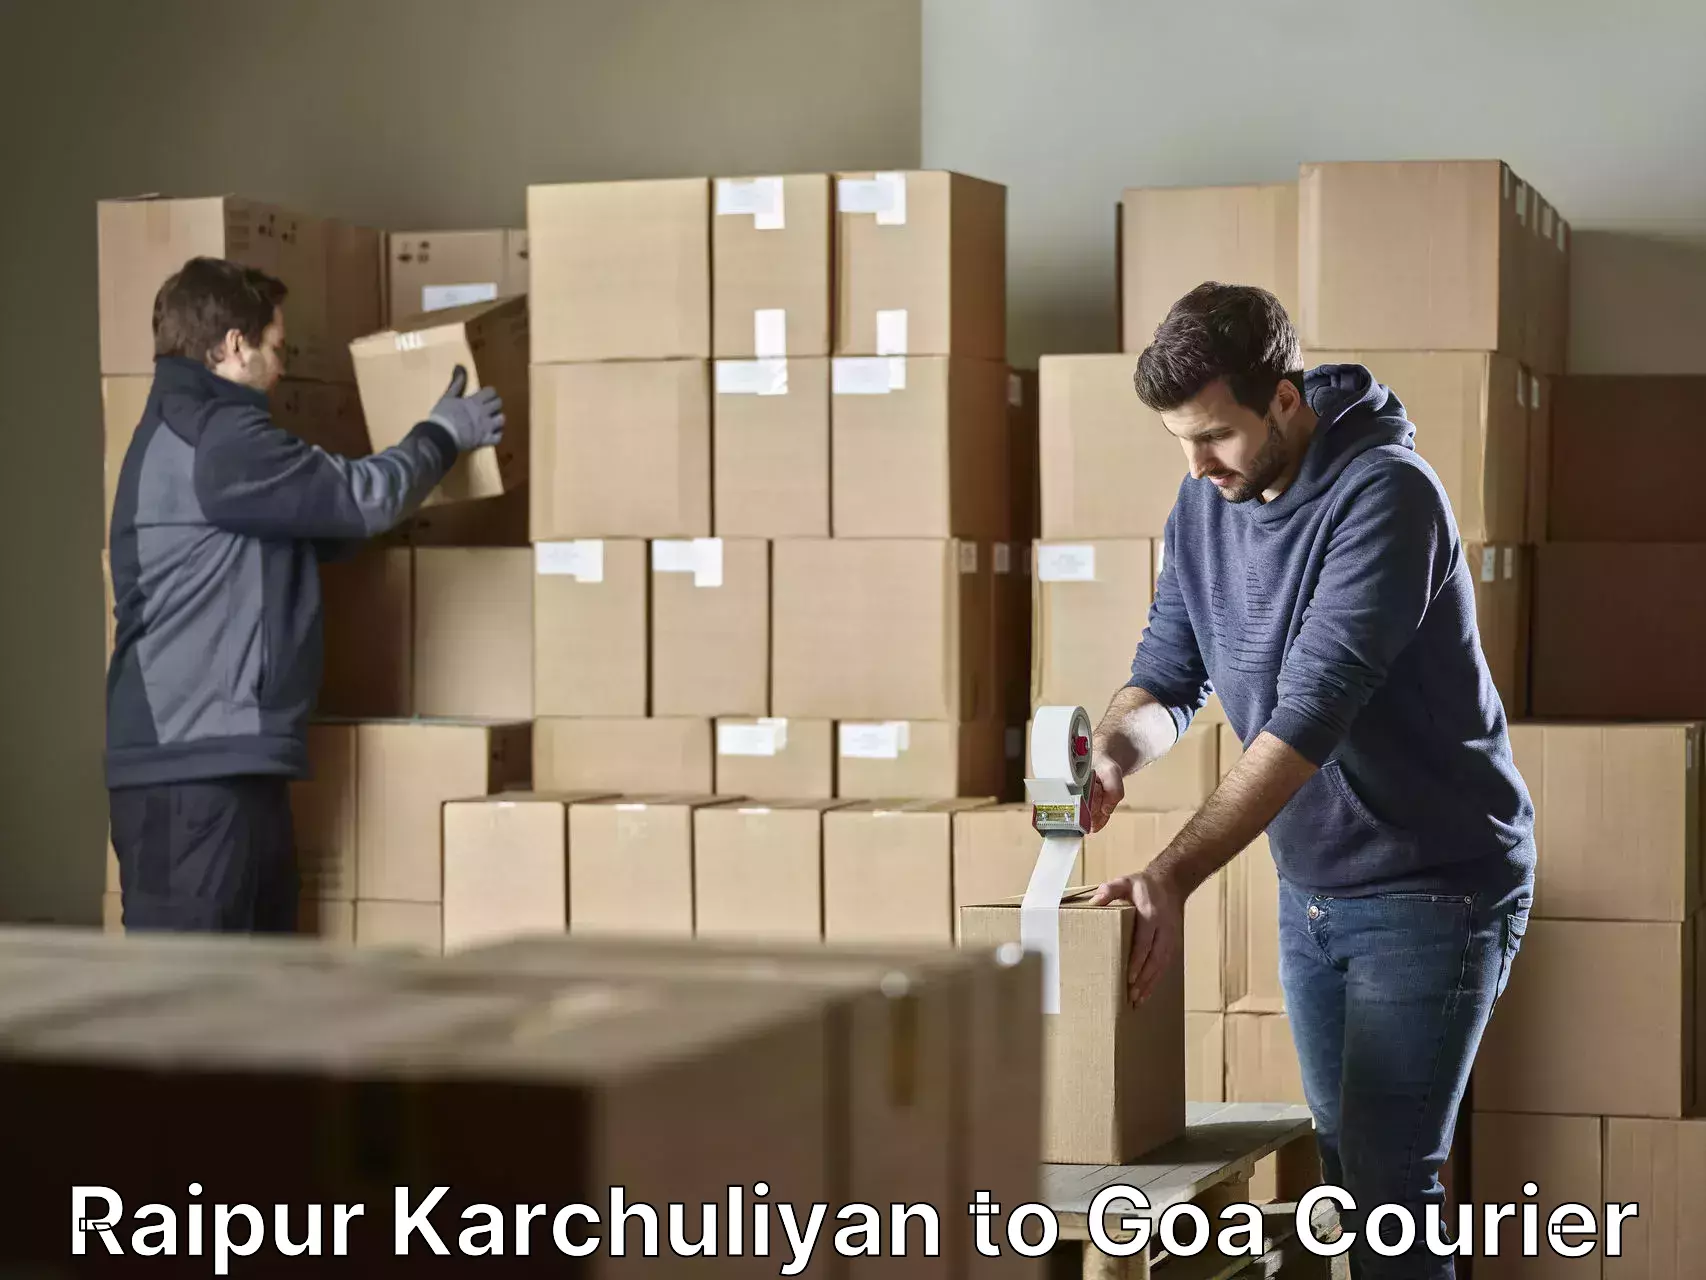 Furniture moving experts Raipur Karchuliyan to Goa University